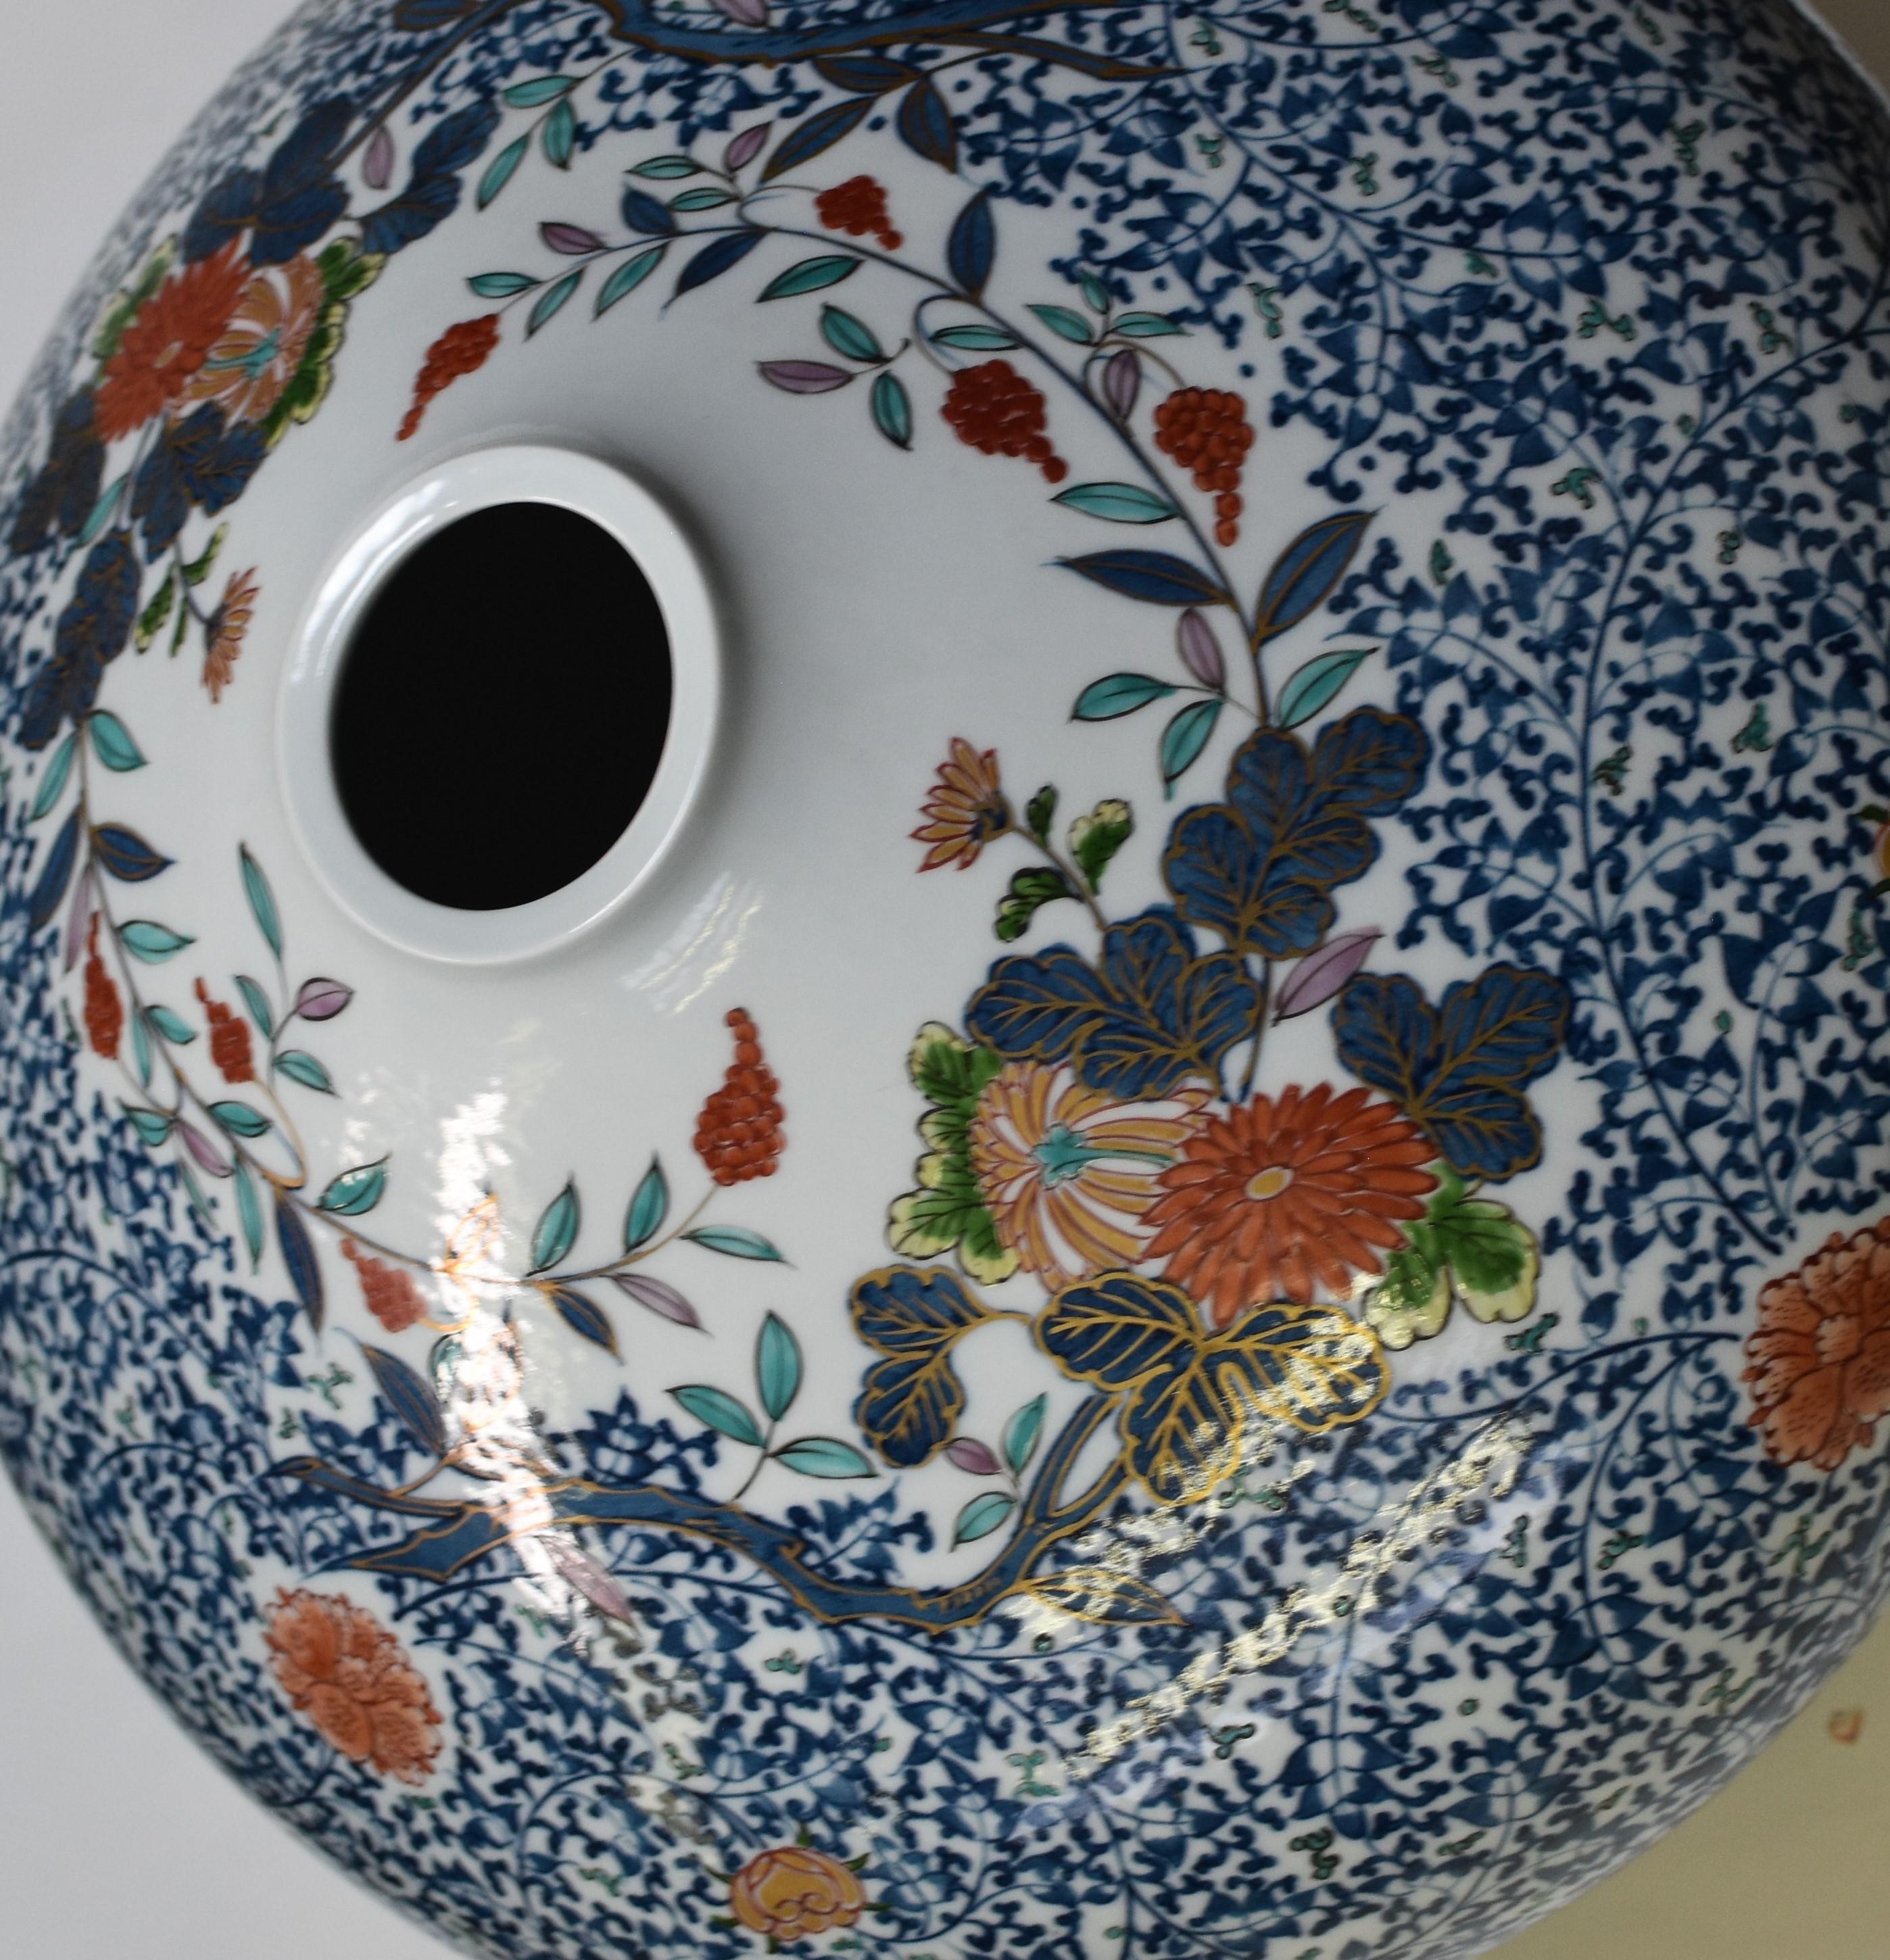 Außergewöhnliche große zeitgenössische japanische Imari-Porzellanvase, extrem aufwendig handbemalt mit dem charakteristischen Muster des Künstlers in lebhaftem Rot und Grün, kobaltblaue Unterglasur auf einem atemberaubend geformten großen runden